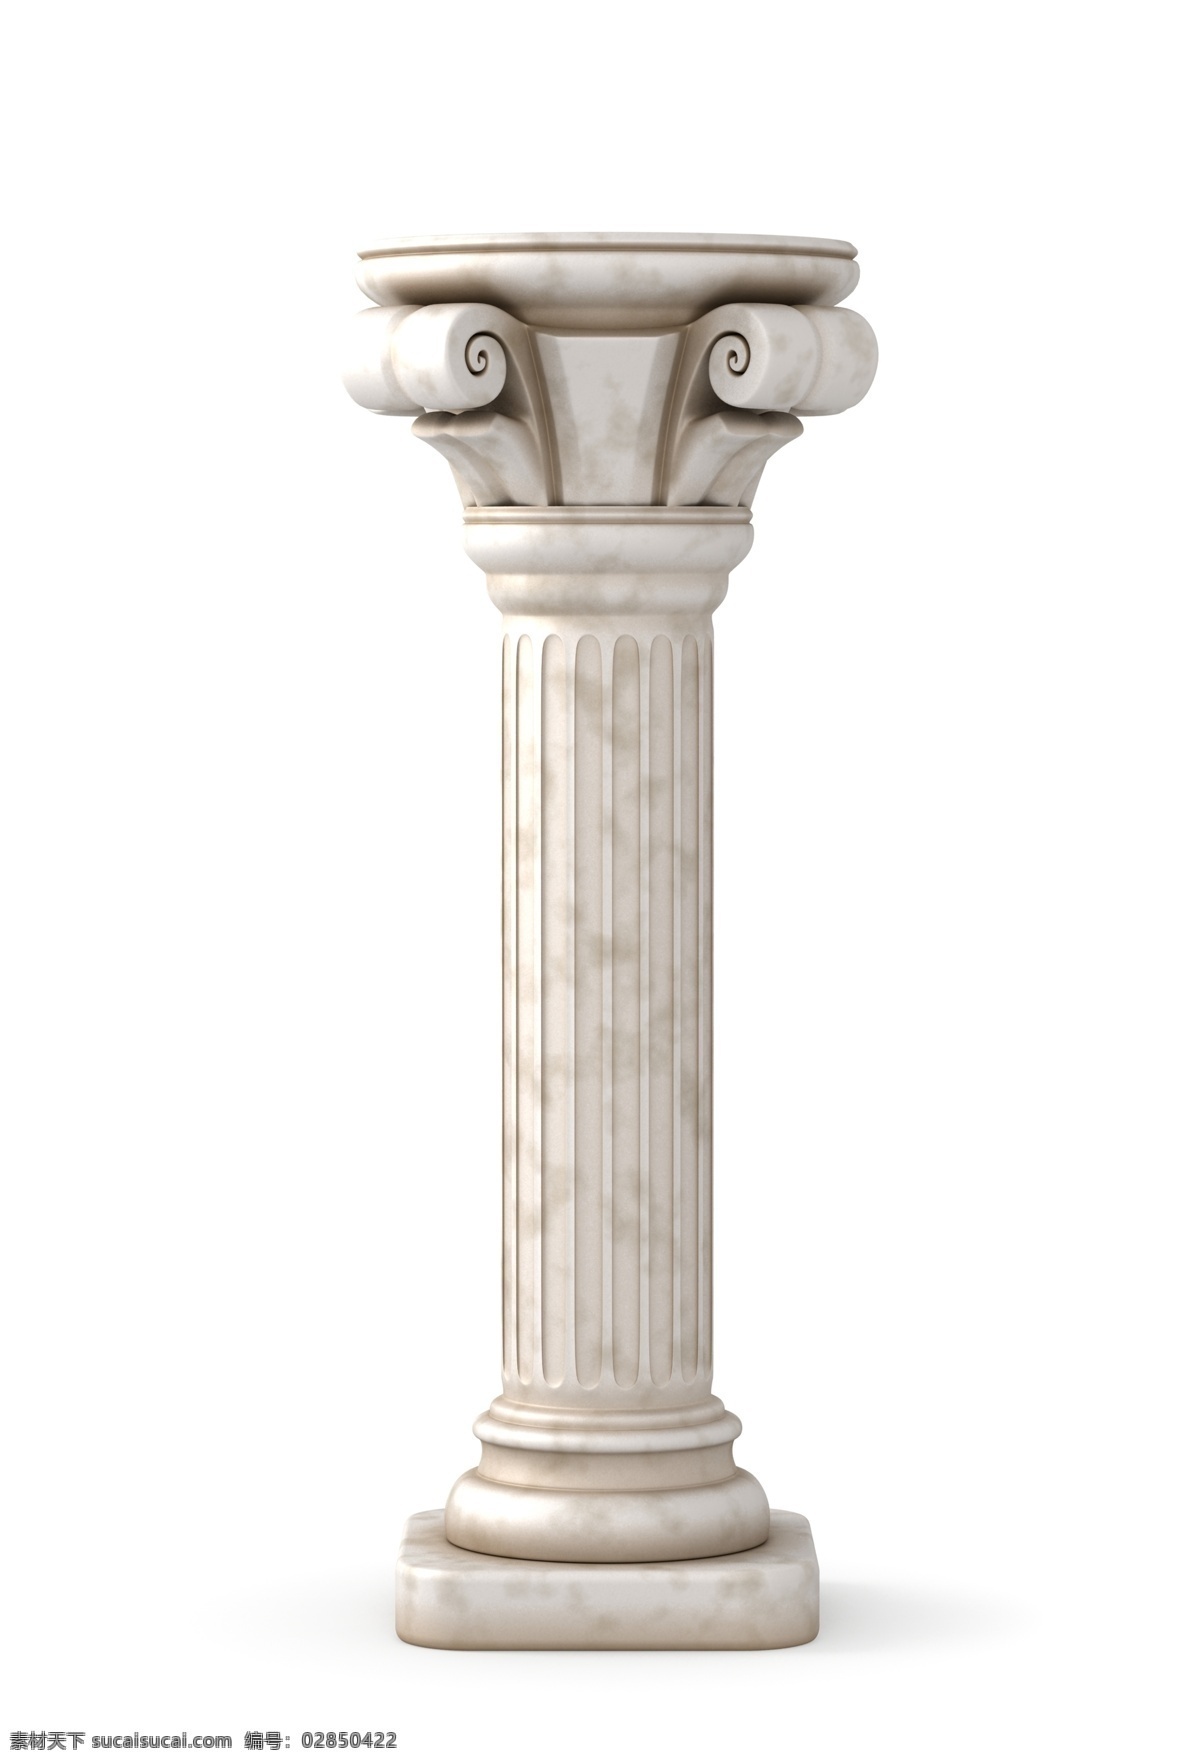 欧式罗马柱 国外建筑 欧式建筑 建筑物 古典建筑 石柱 柱子 罗马柱 建筑设计 其他类别 环境家居 白色